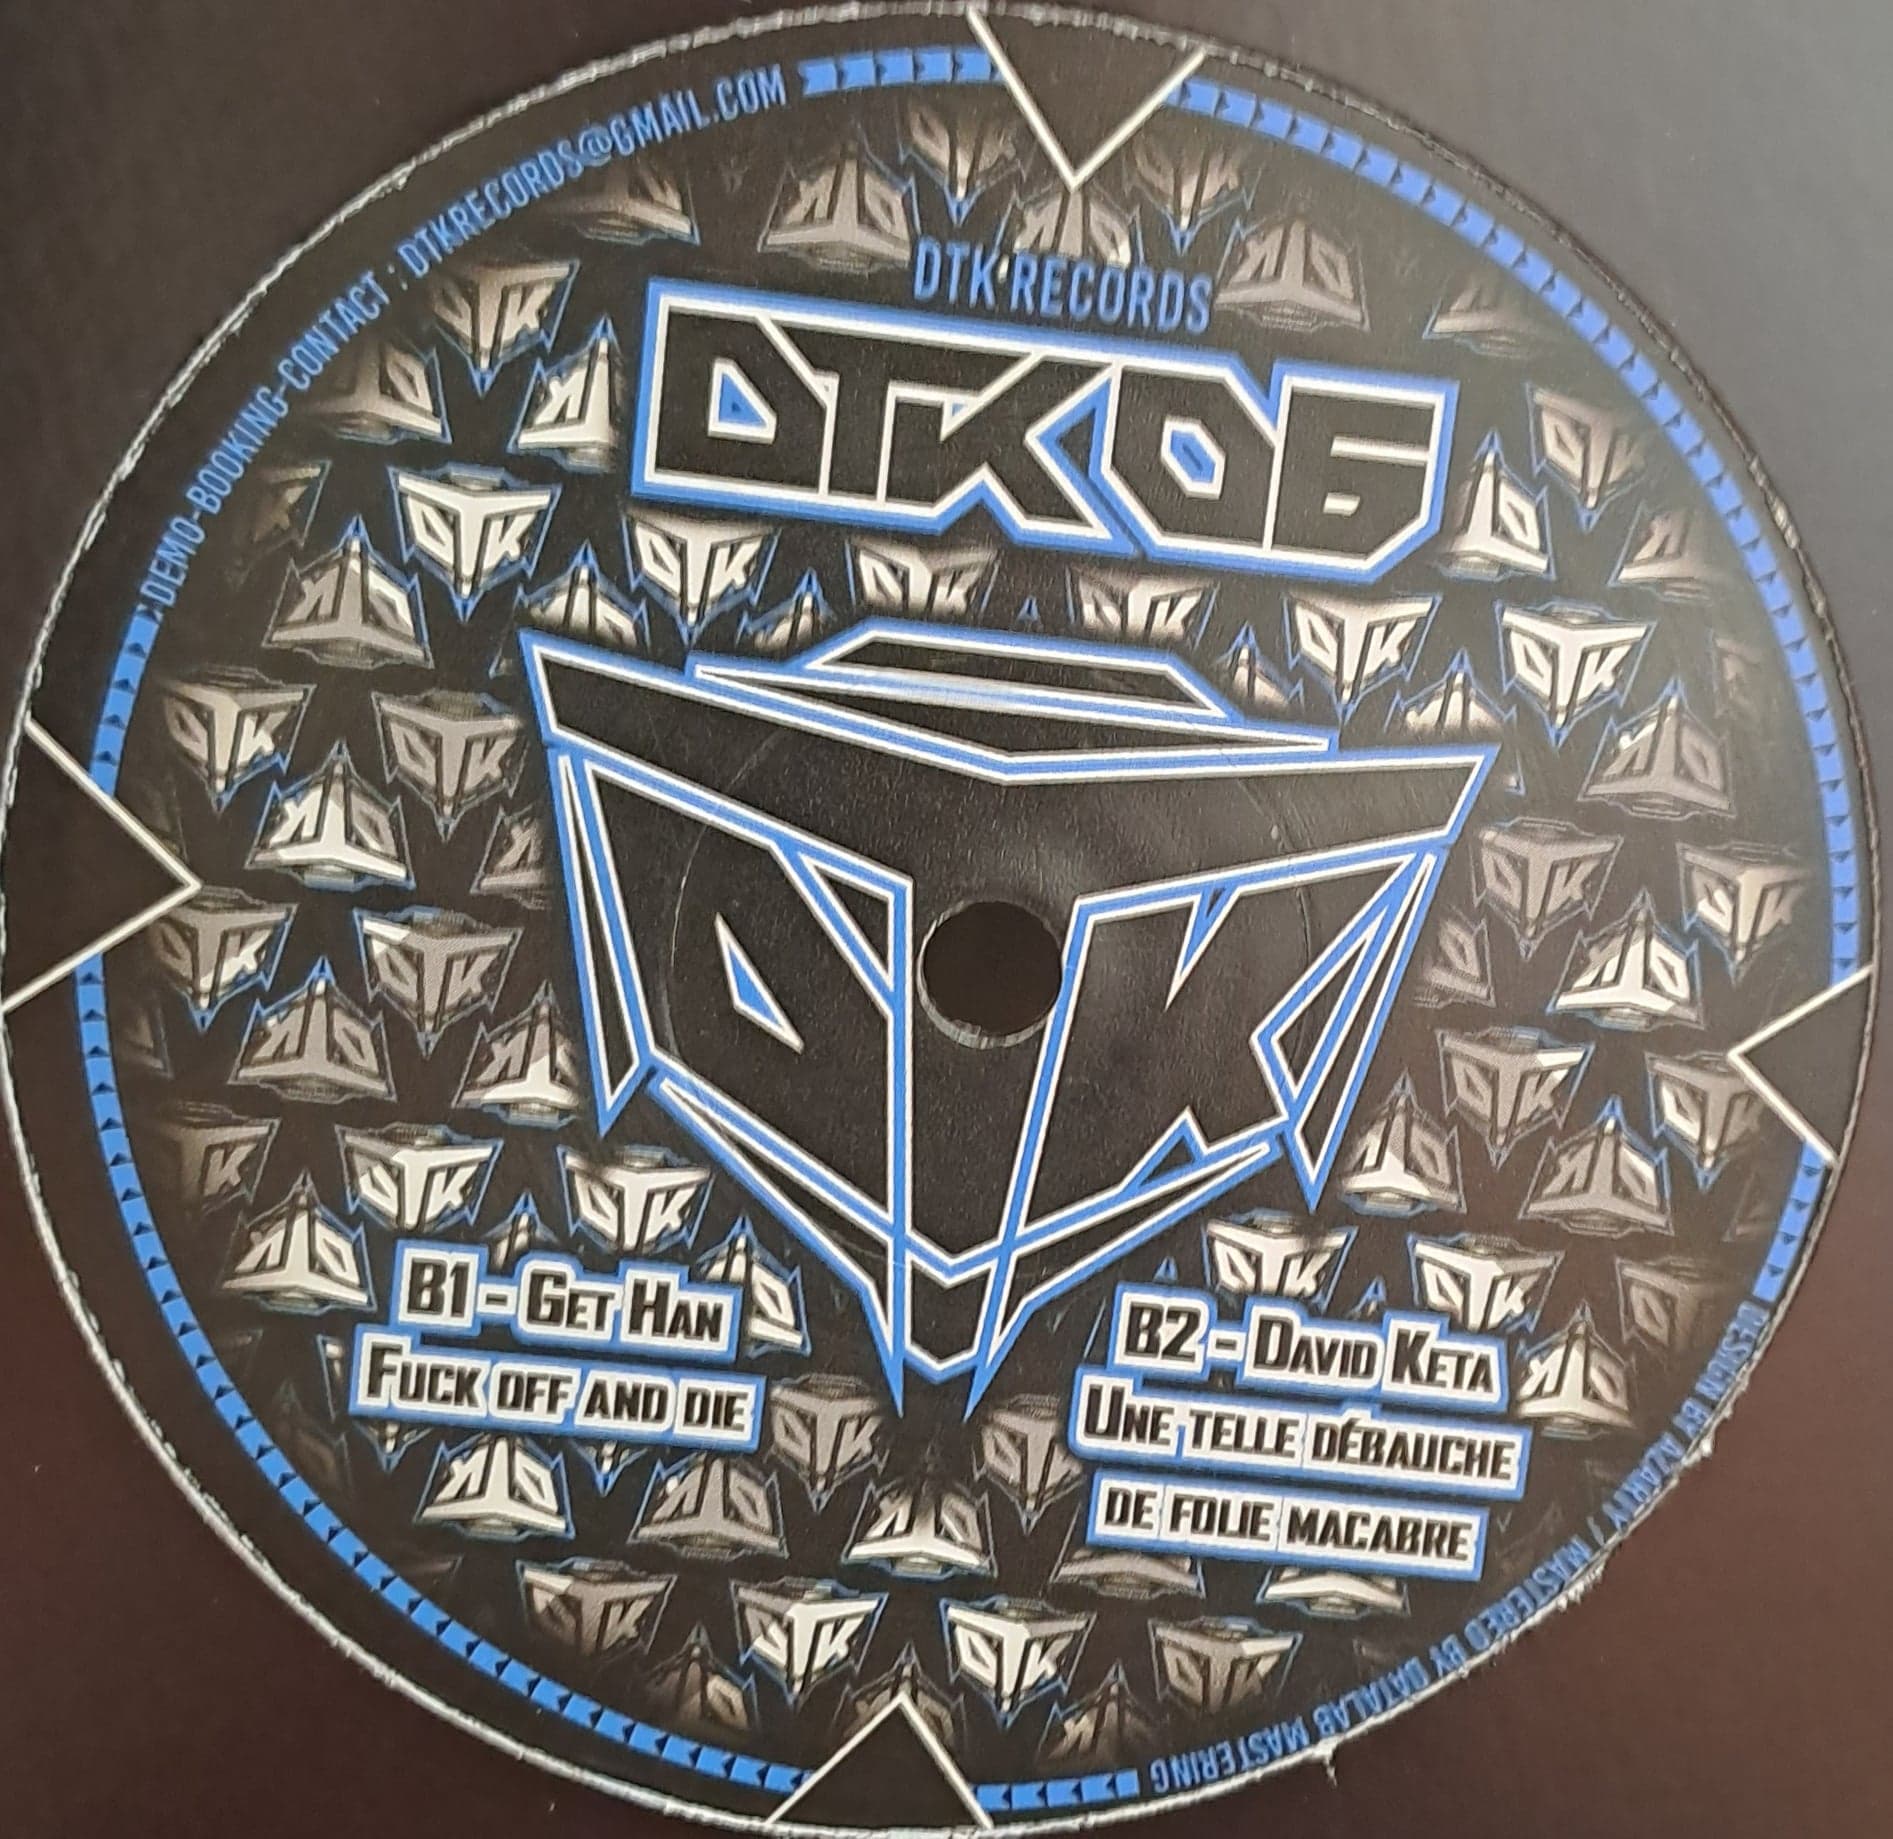 Dtraké 06 (dernières copies en stock) - vinyle hardcore